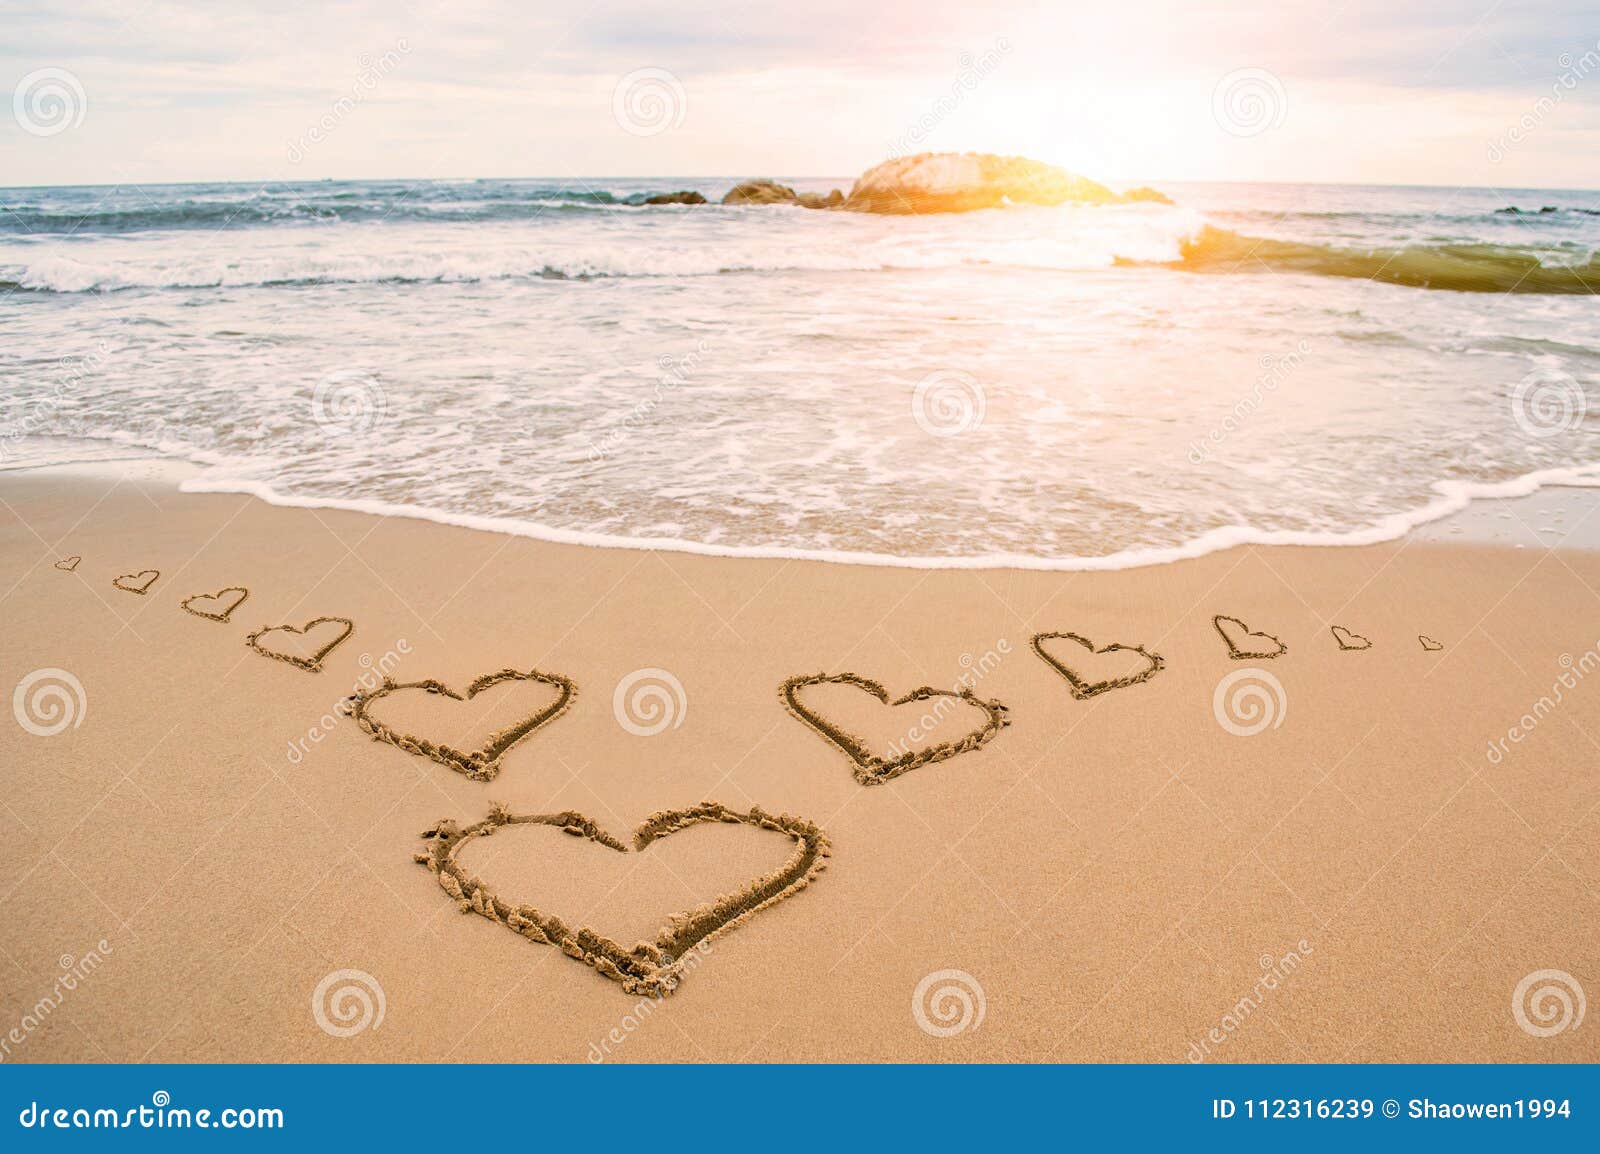 love sunshine heart beach